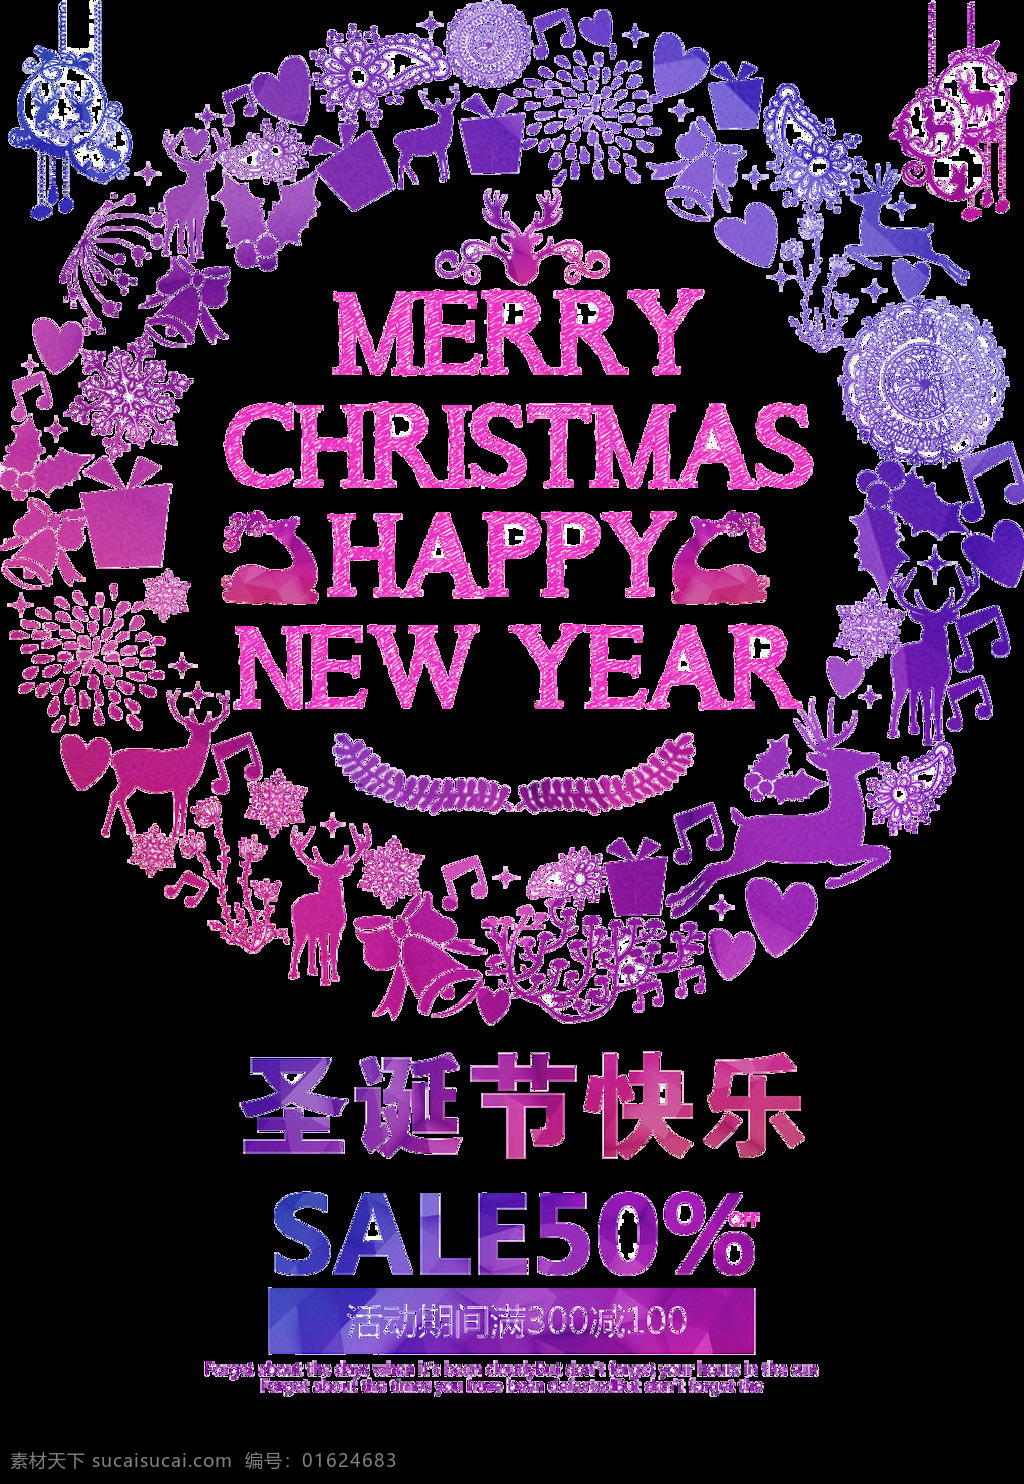 紫色 圣诞节 字体 装饰 元素 抽象素材 抽象元素 创意装饰 节日装饰 卡通元素 铃铛 圣诞png 圣诞节快乐 圣诞免抠元素 装饰图案 紫色素材